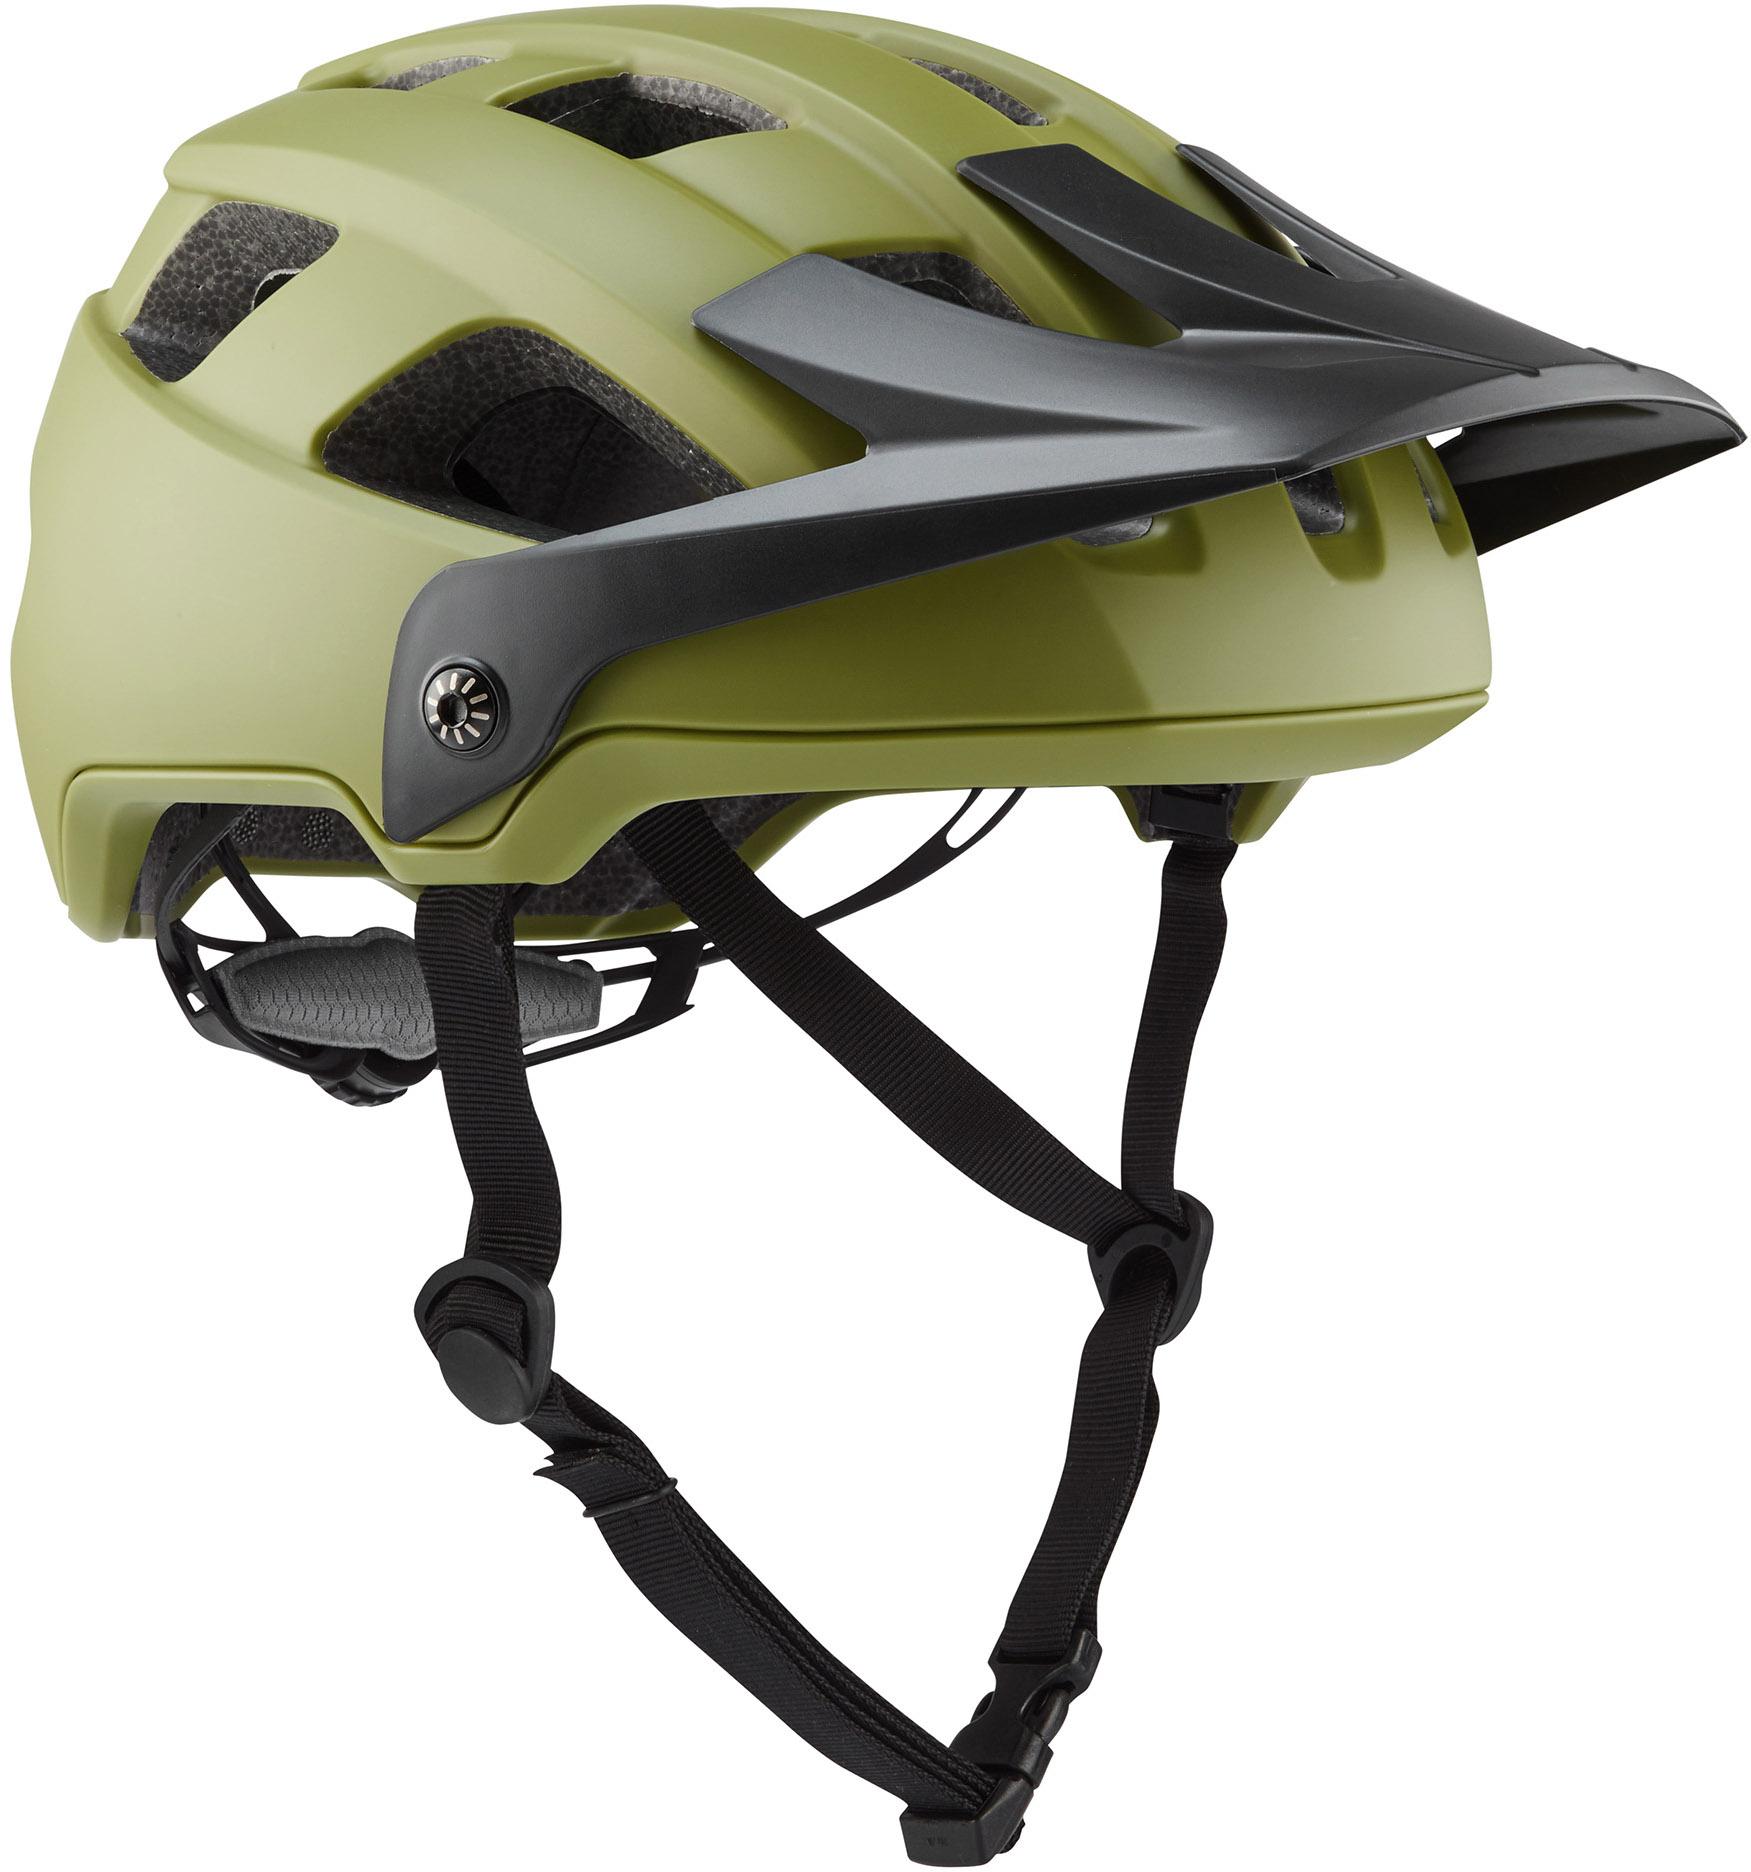 Brand-x Eh1 Enduro Mtb Cycling Helmet - Moss Green